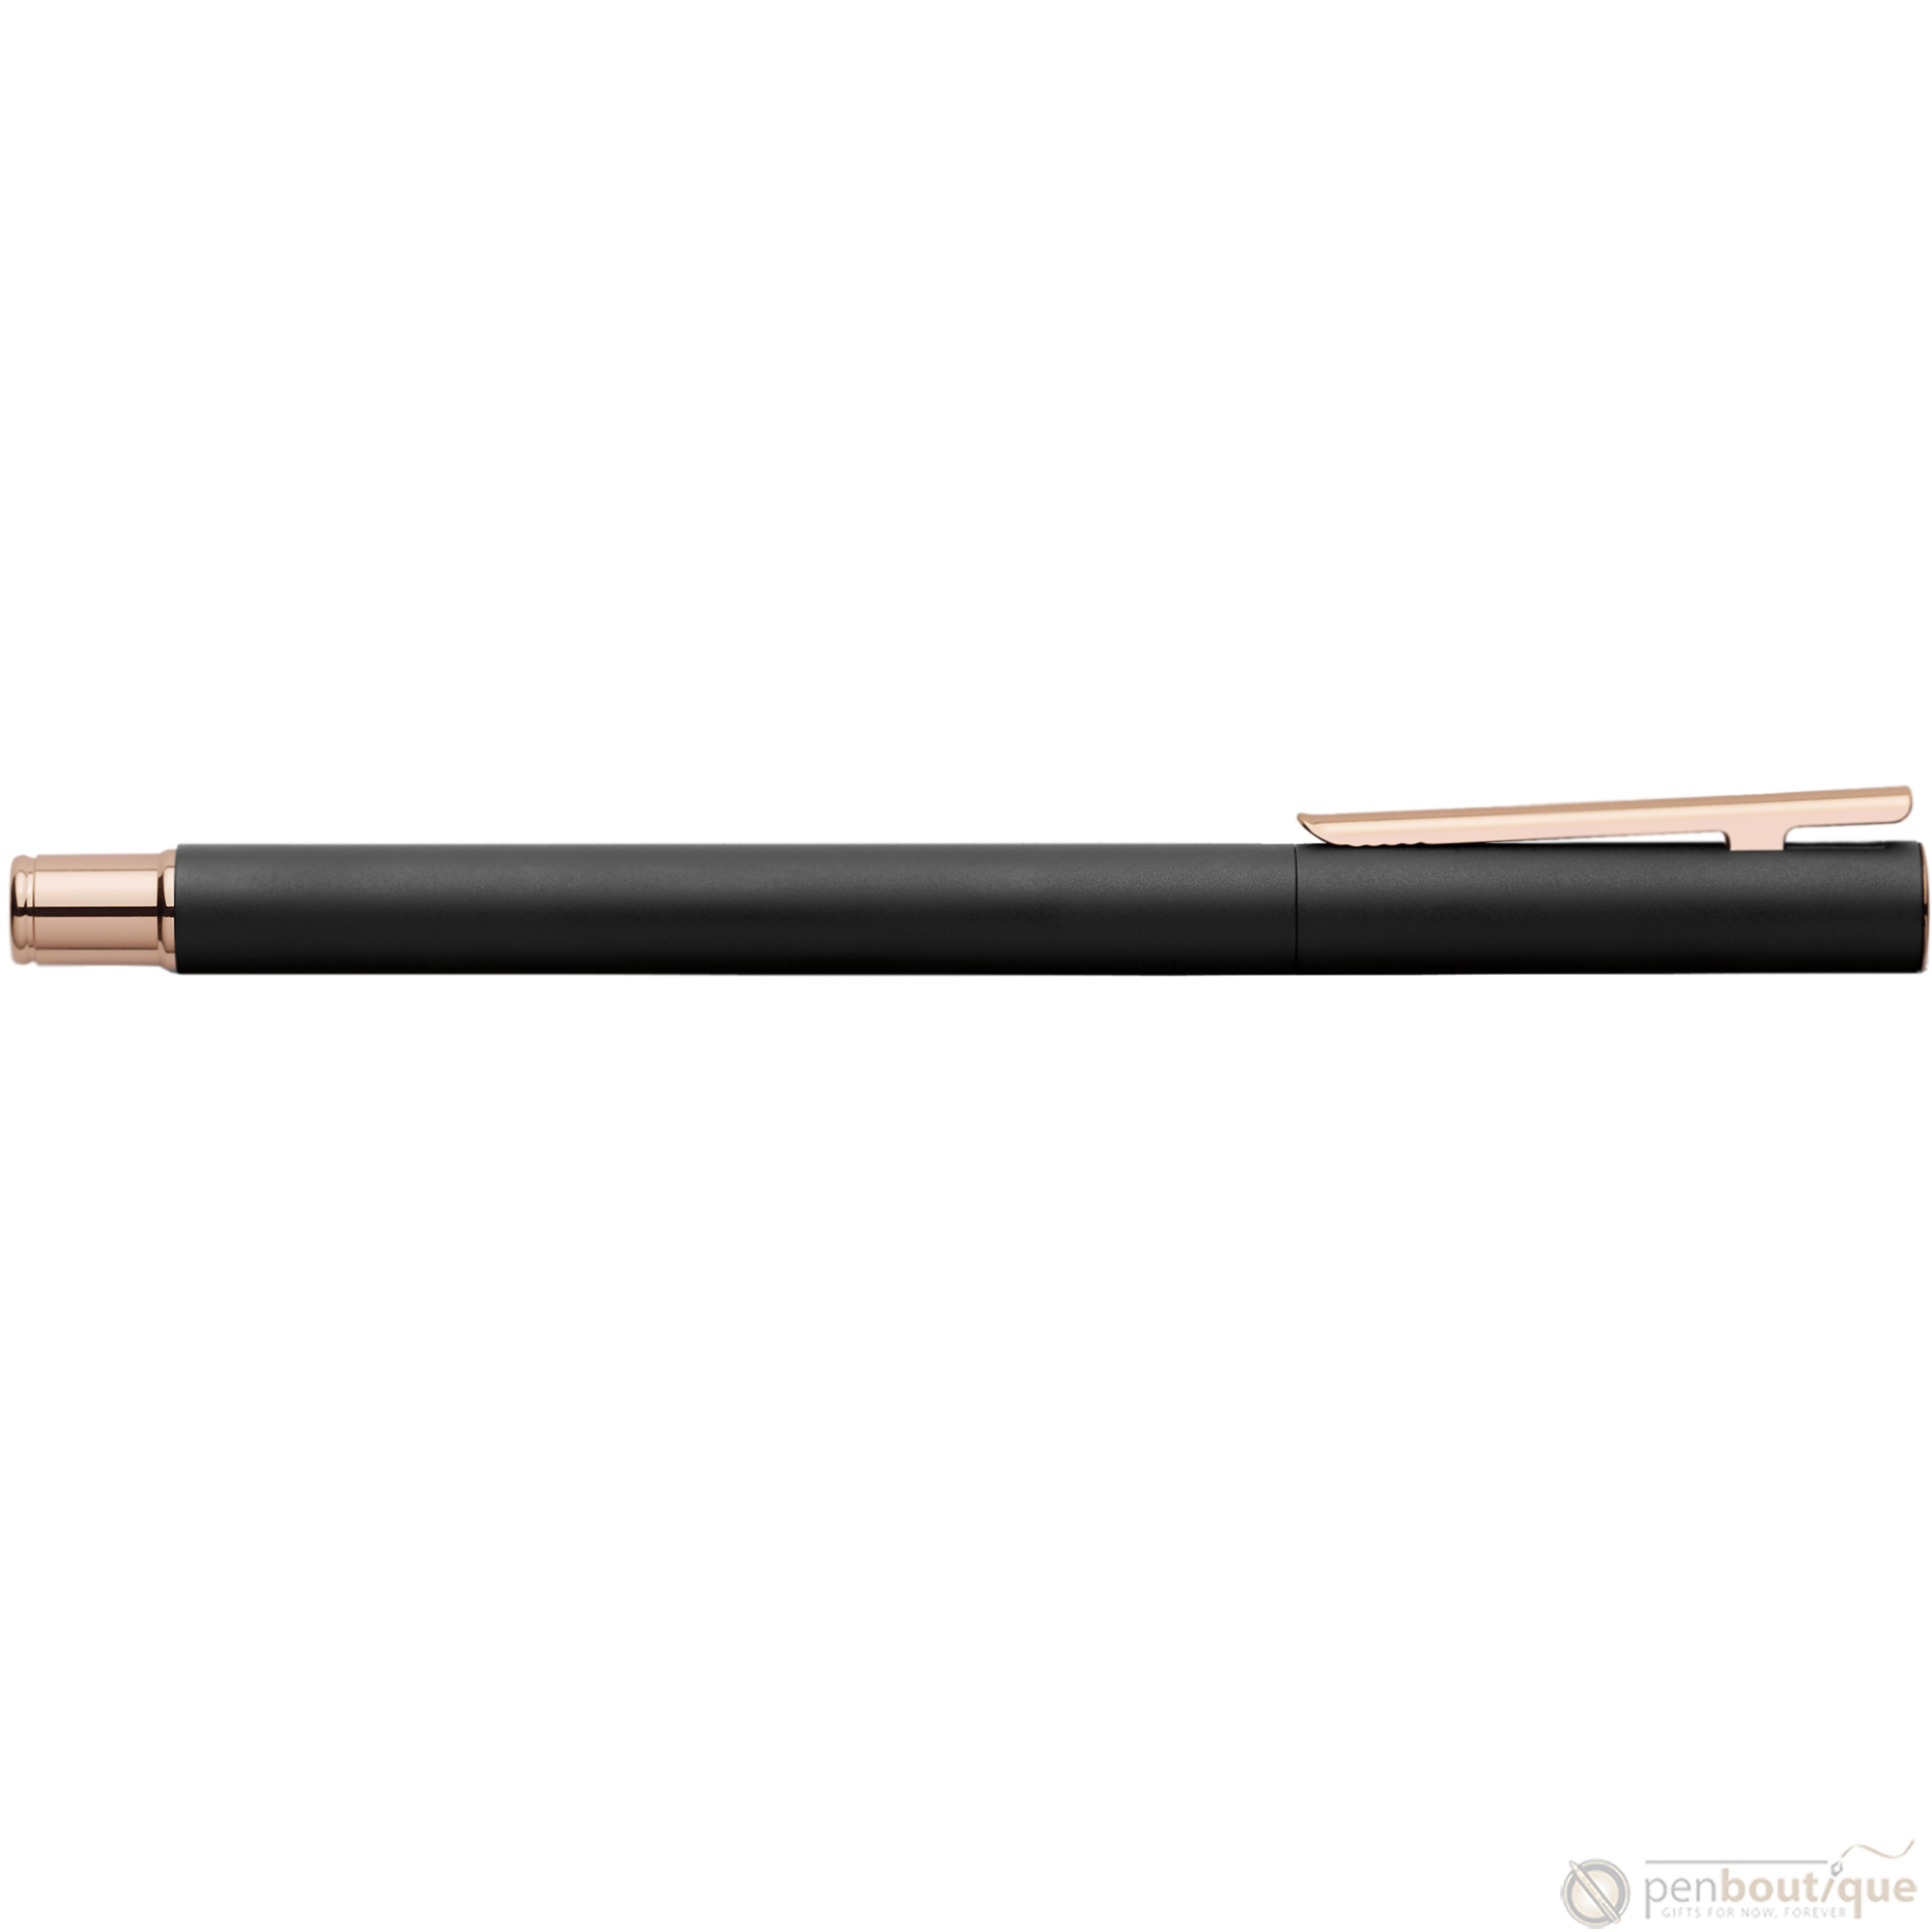 Faber Castell NEO Slim Fountain Pen - Black Matte w/ Rose Gold-Pen Boutique Ltd